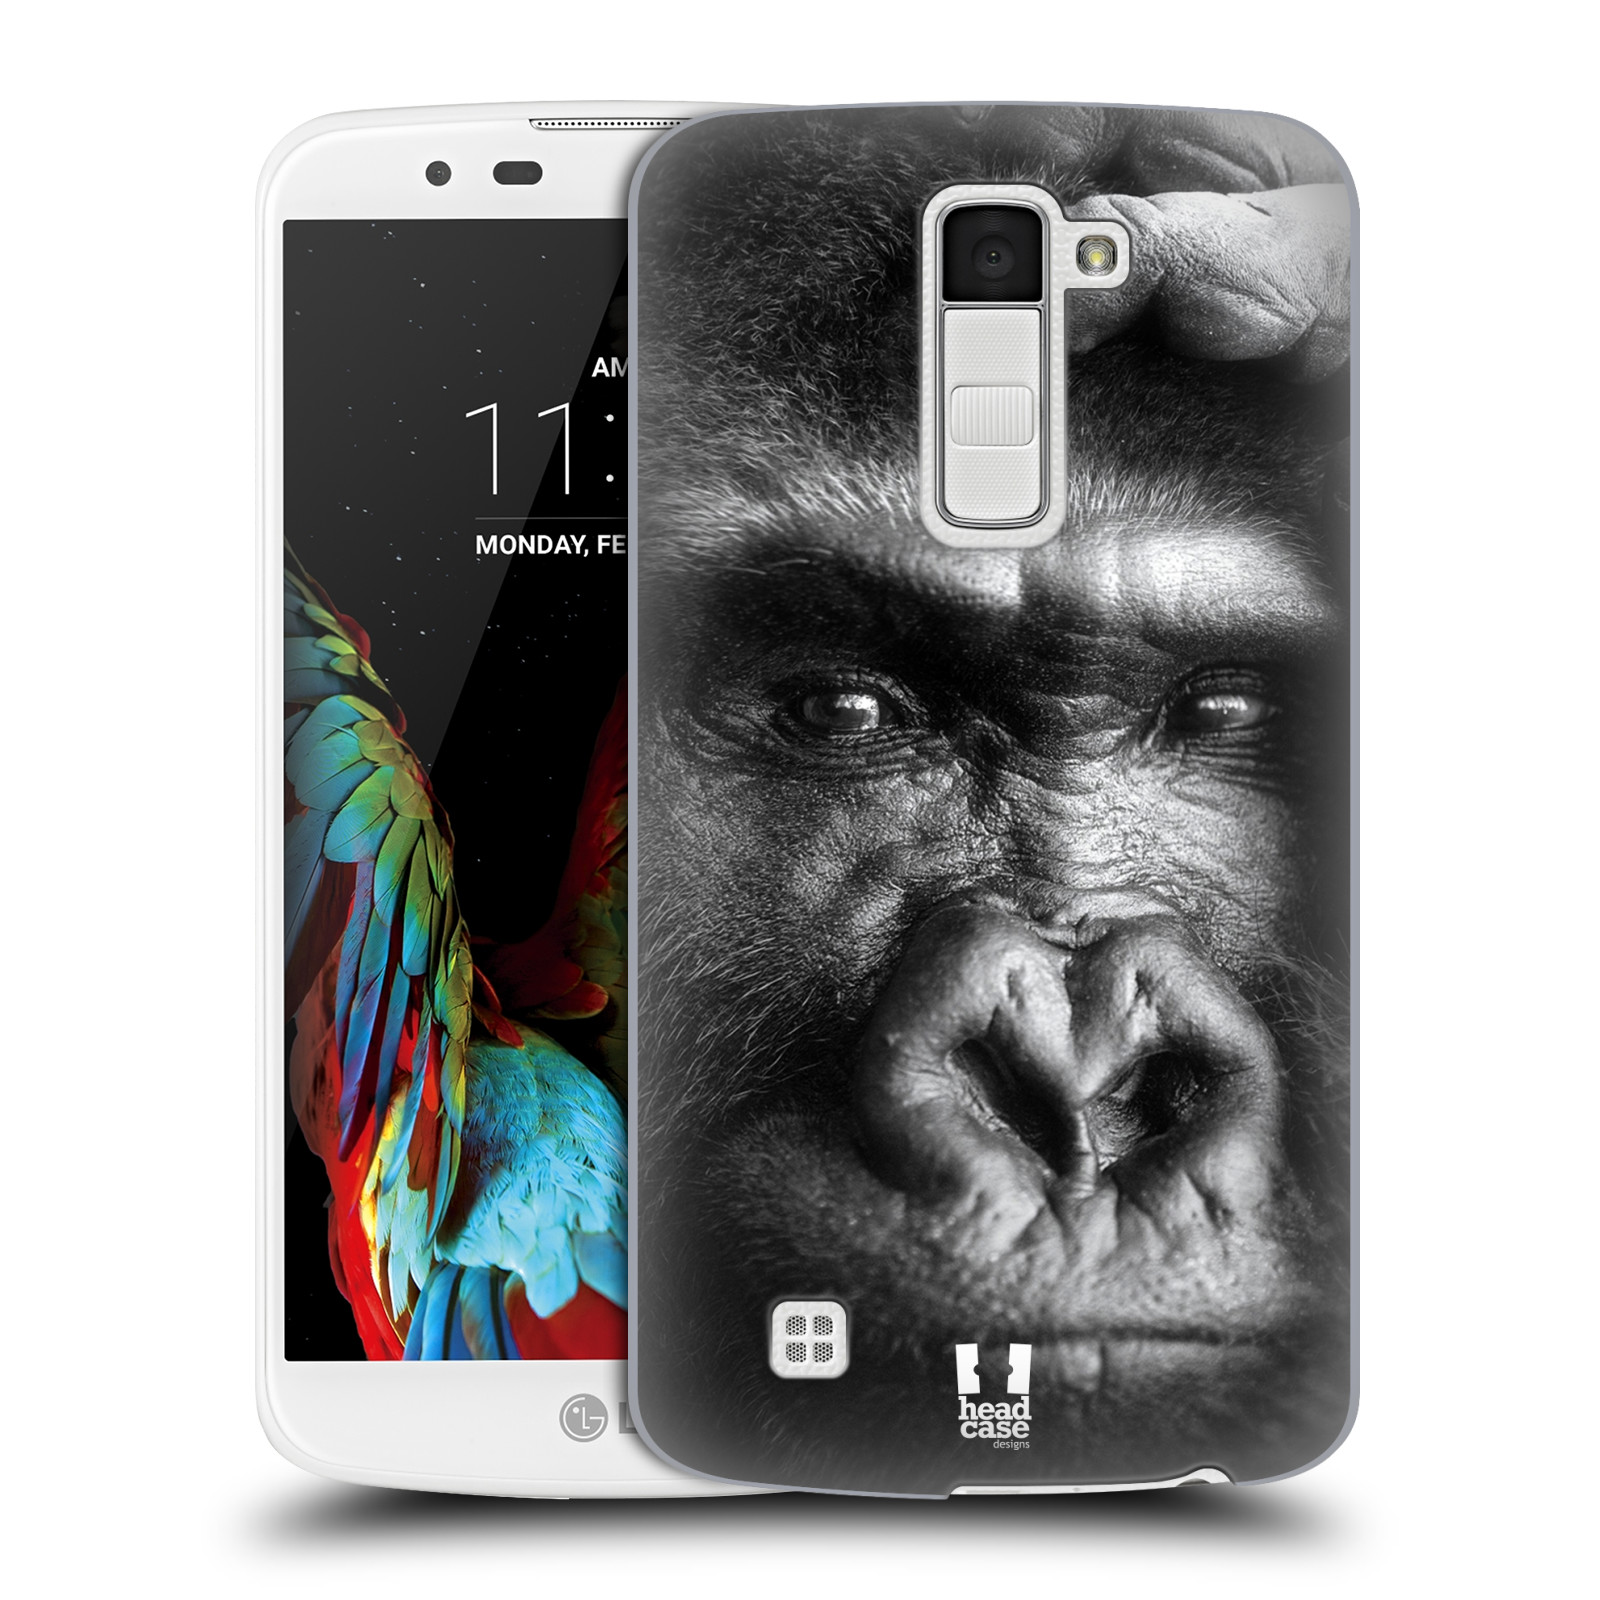 HEAD CASE plastový obal na mobil LG K10 vzor Divočina, Divoký život a zvířata foto GORILA TVÁŘ